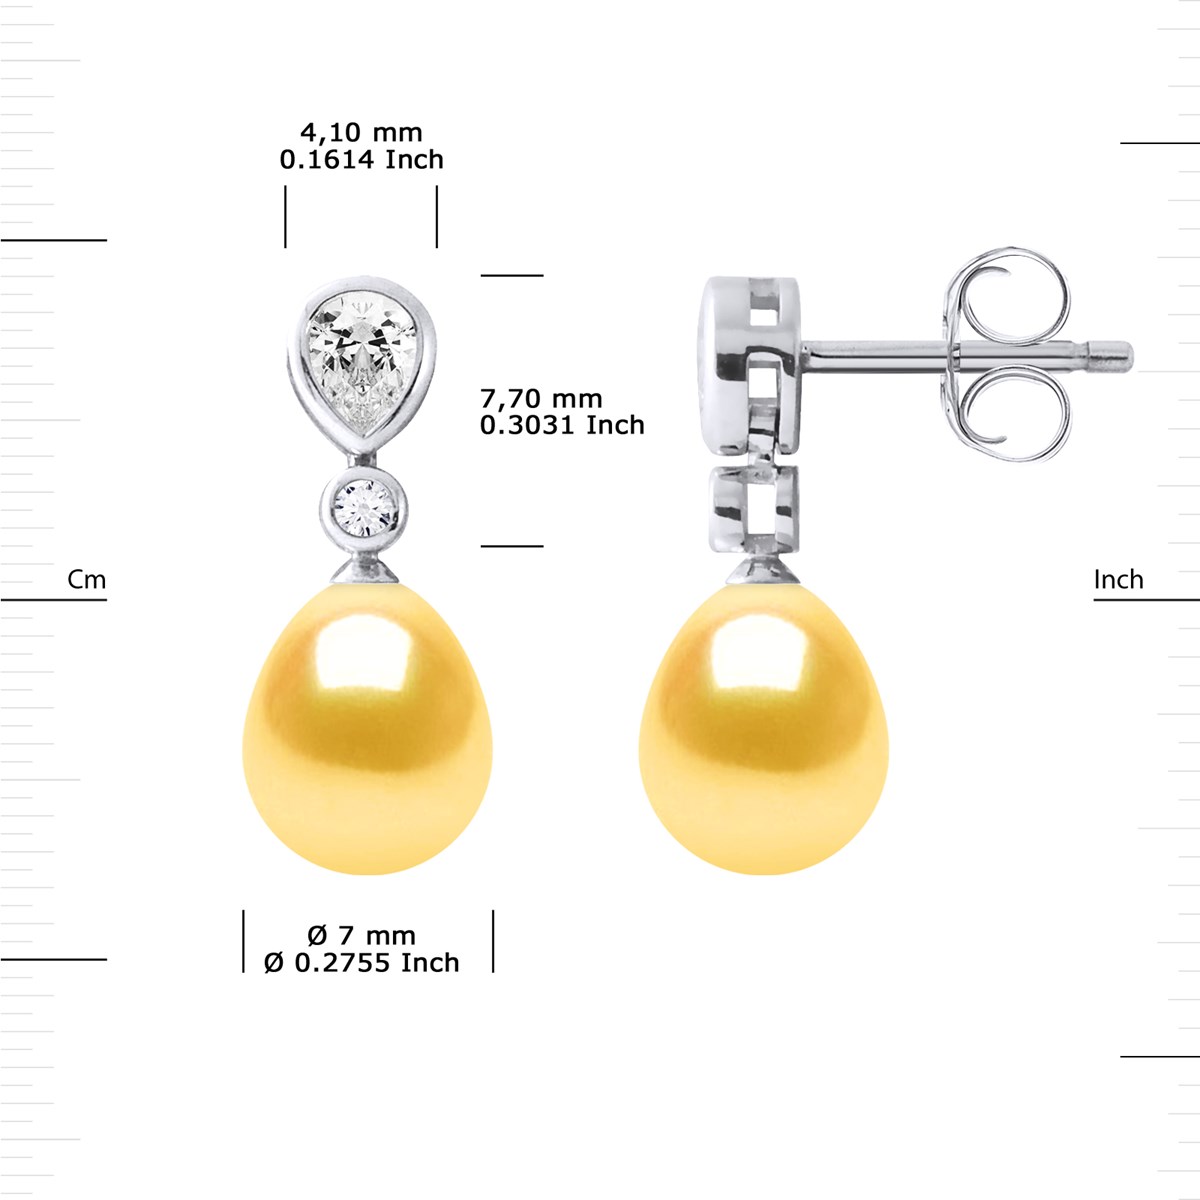 Pendants d'Oreilles Joaillerie Perles d'Eau Douce Poires 7-8 mm Dorées Argent 925 - vue 3